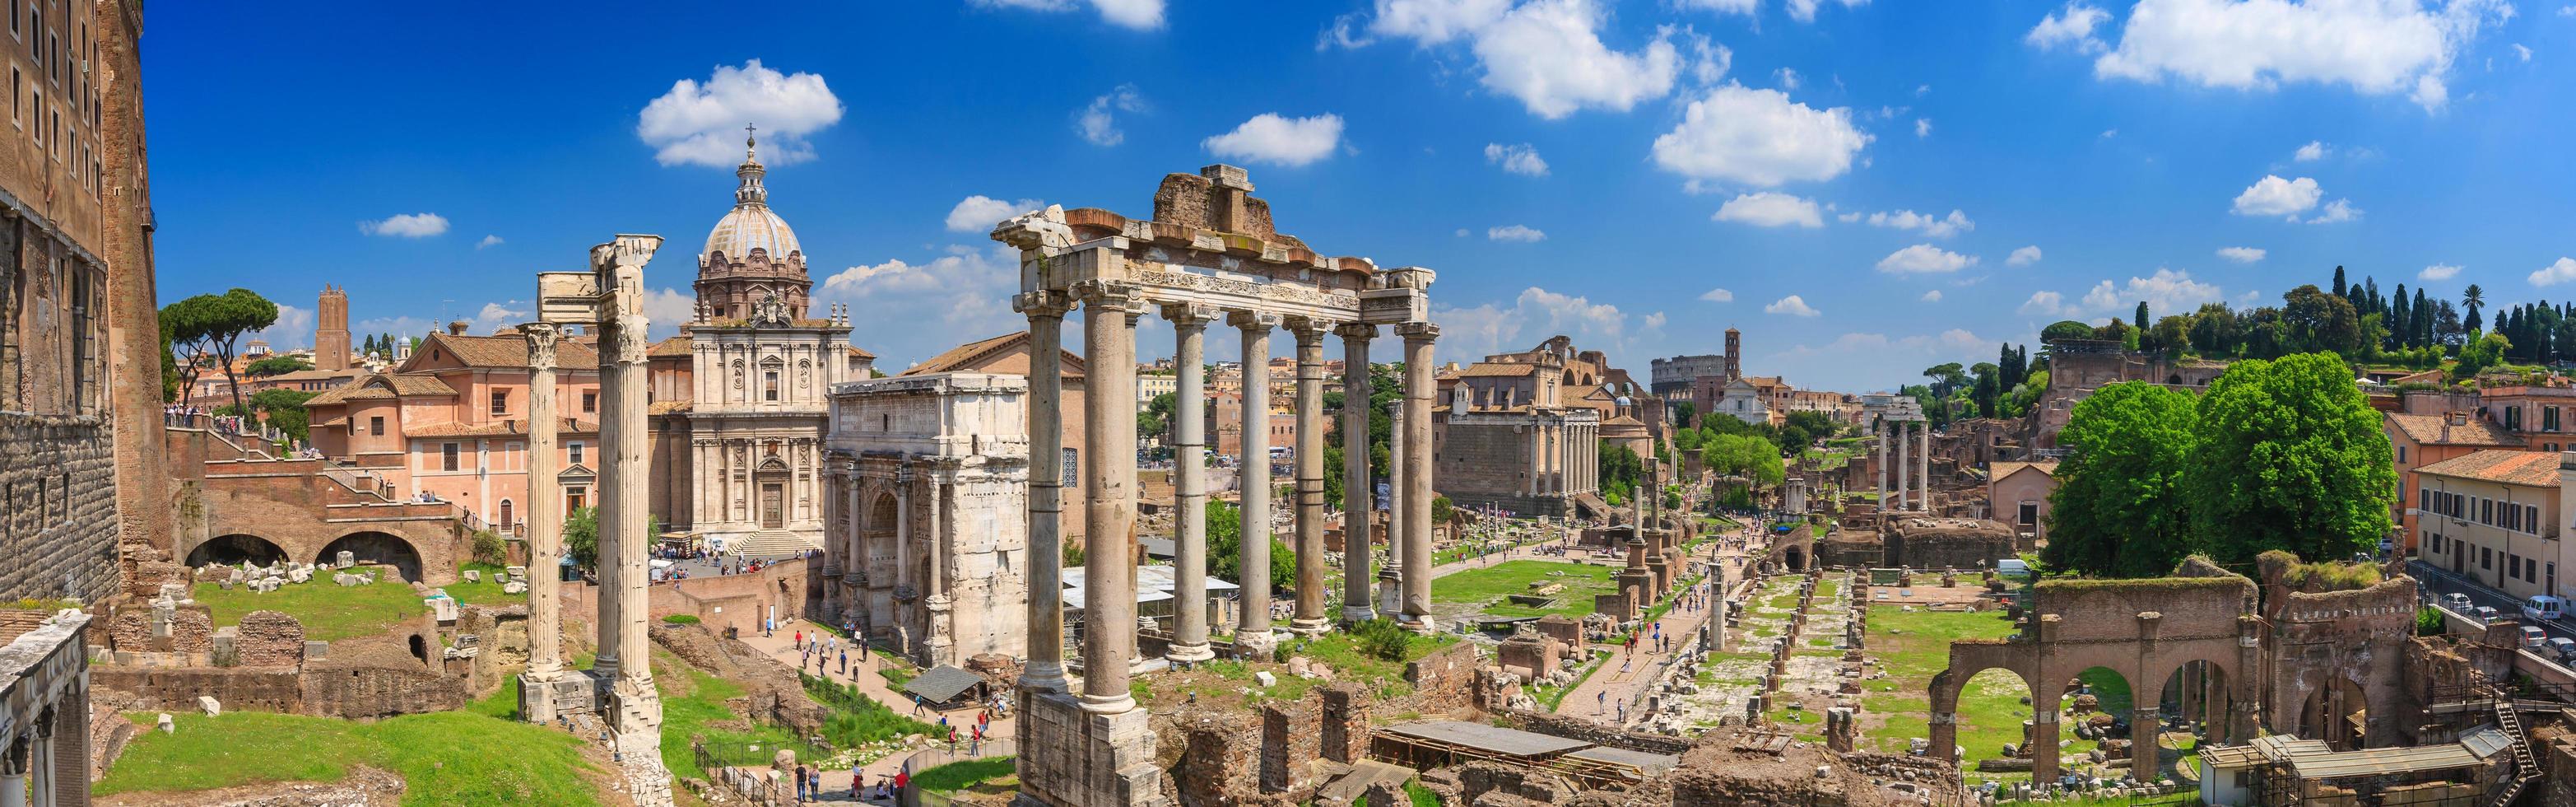 fórum romano em roma foto